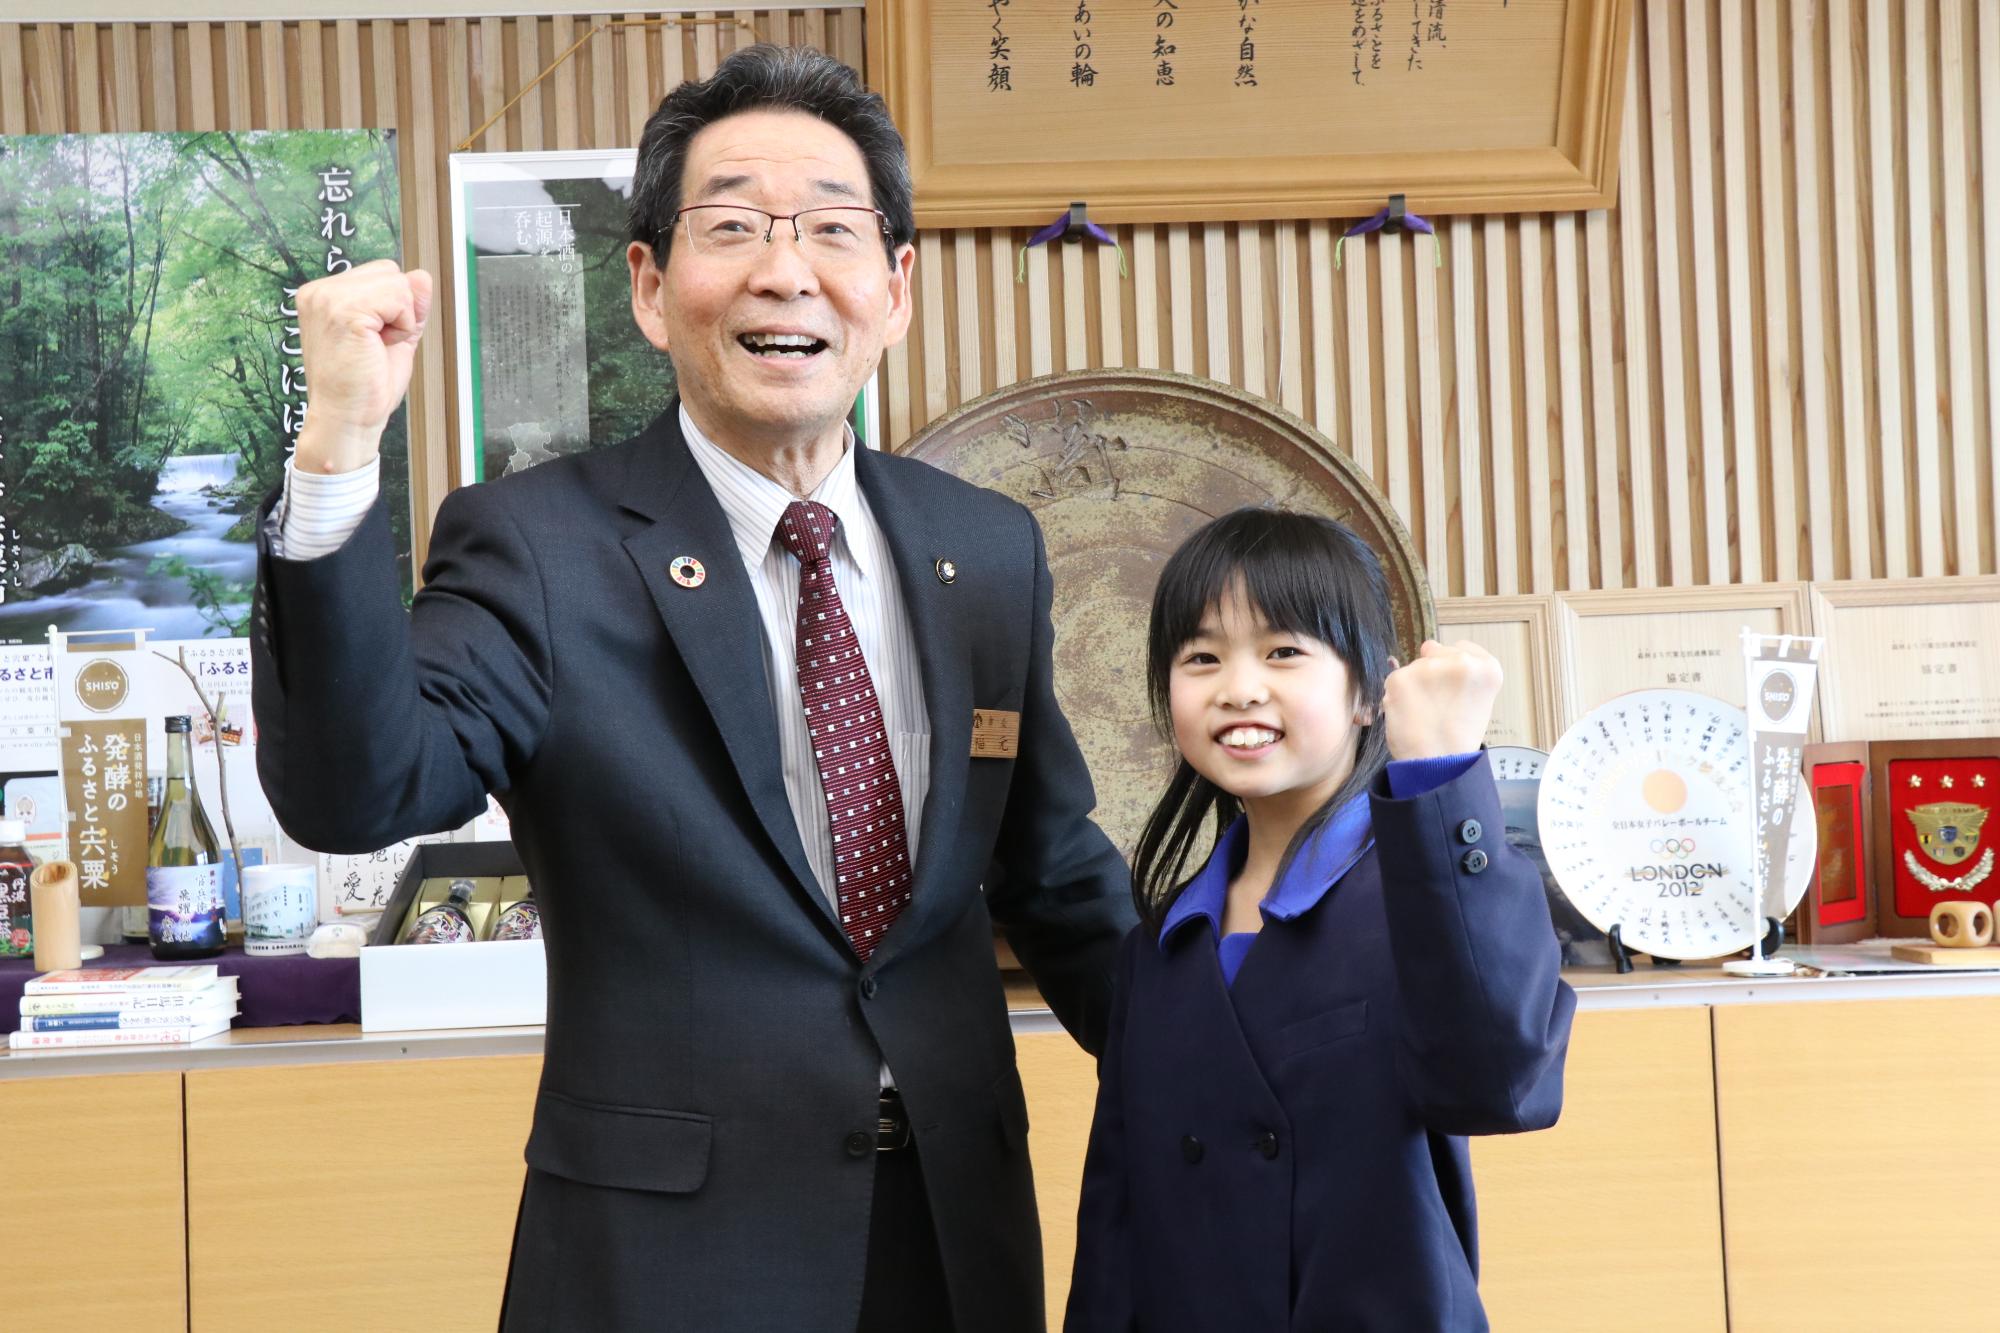 福元市長と全日本ブレイキン選手権に出場する神野小学校の宇田さんが並んでガッツポーズをしている写真